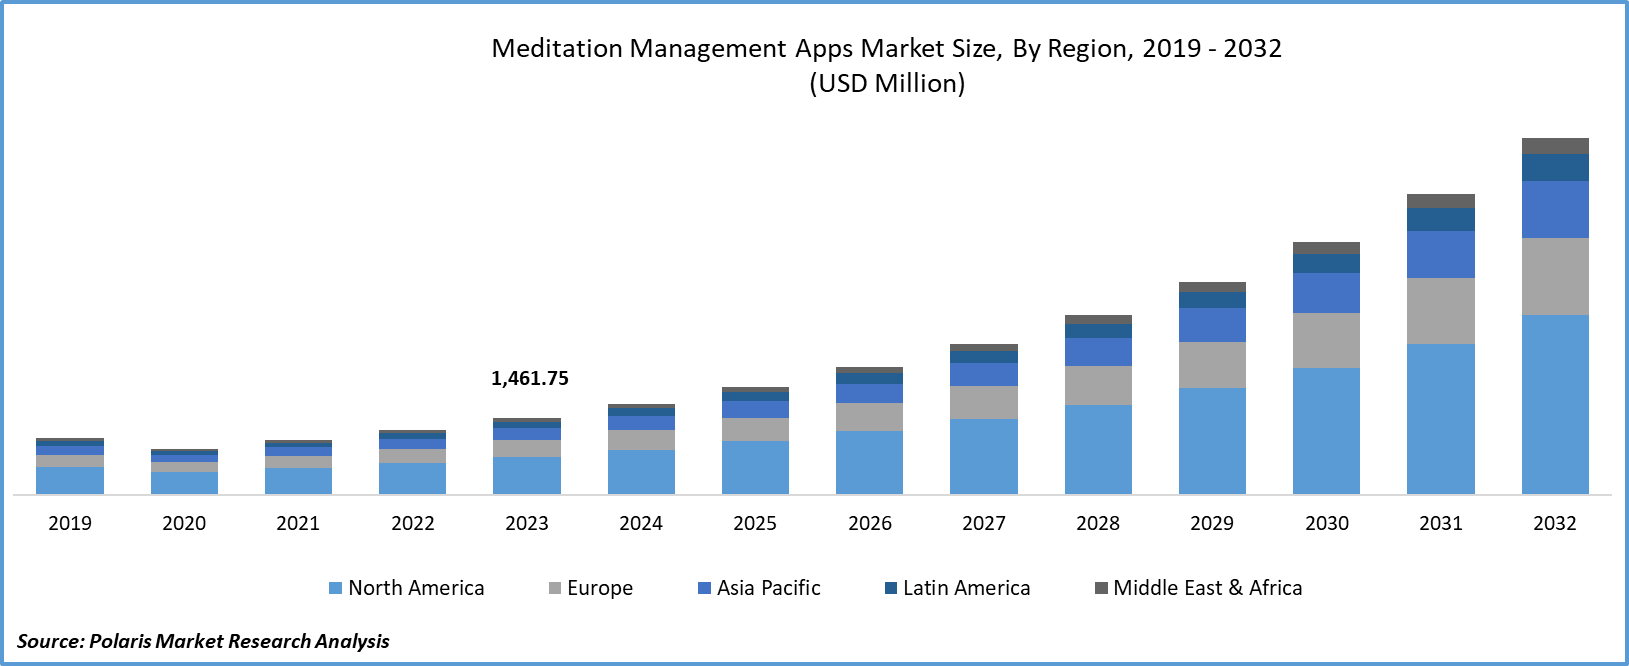 Meditation Management Apps Market Size